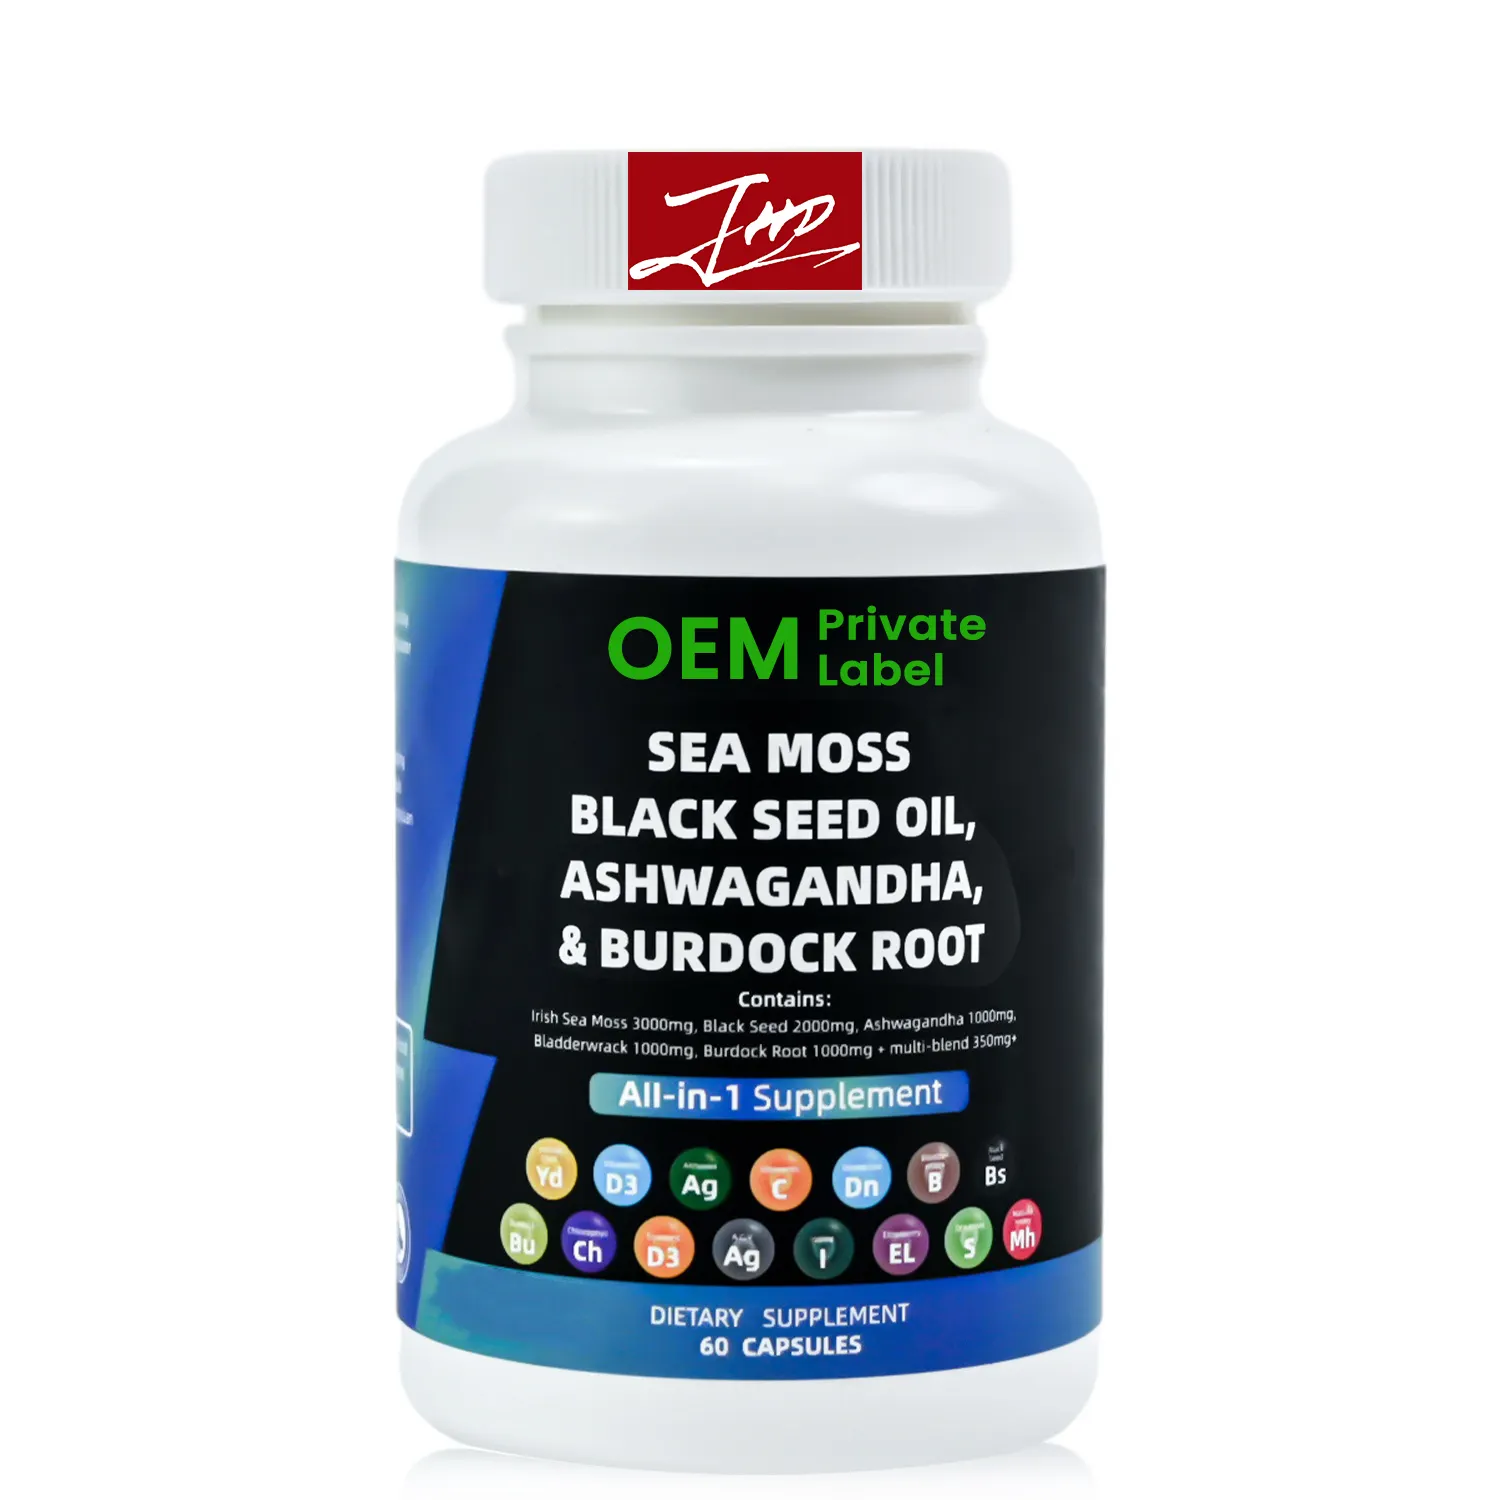 OEM private label 16-in-1 Burdock Root Black Seed Oil Ashwagandha Vegan Irish Sea Moss Complex Capsules